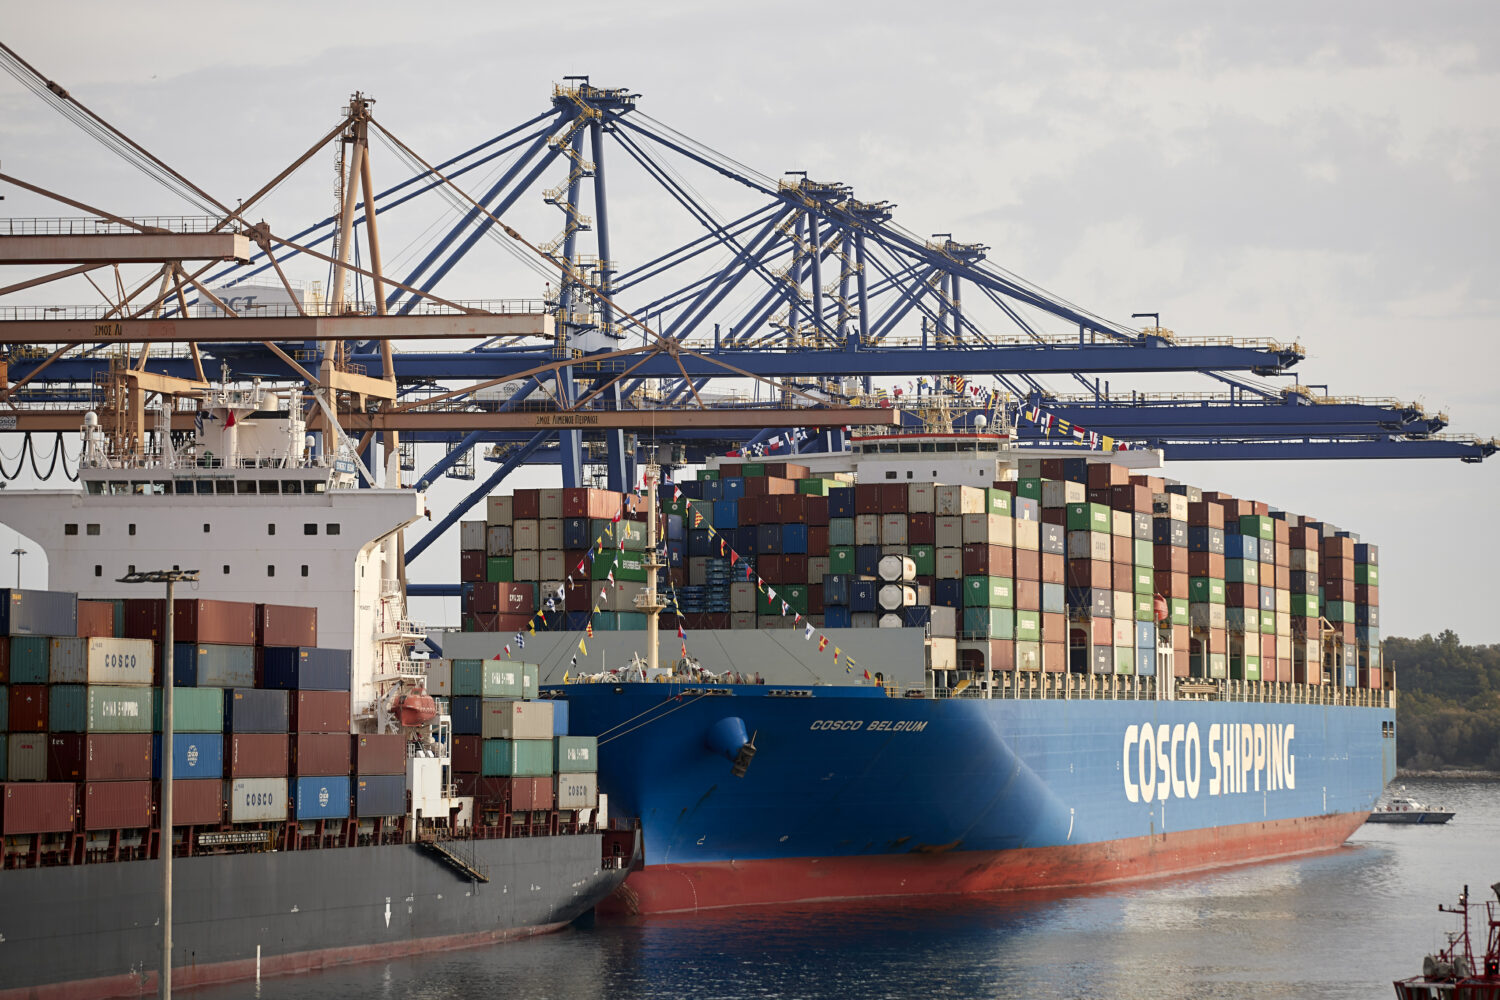 ΤΑΙΠΕΔ: Ολοκληρώθηκε η μεταβίβαση του επιπλέον 16% του ΟΛΠ στην COSCO SHIPPING